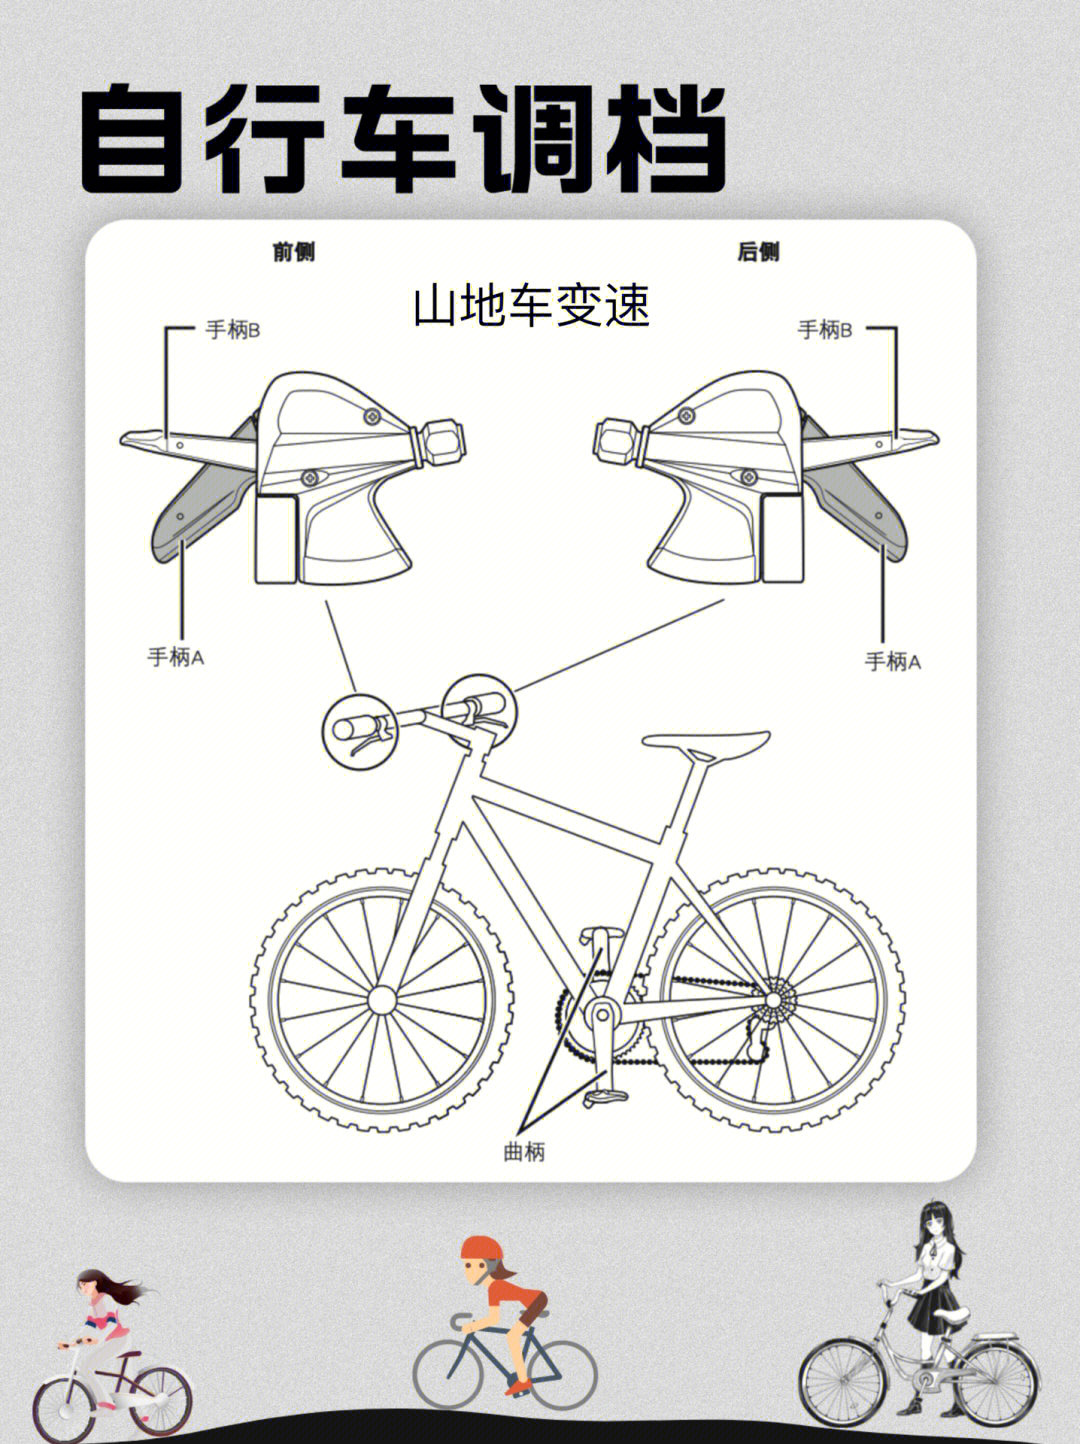 自行车飞轮原理图片